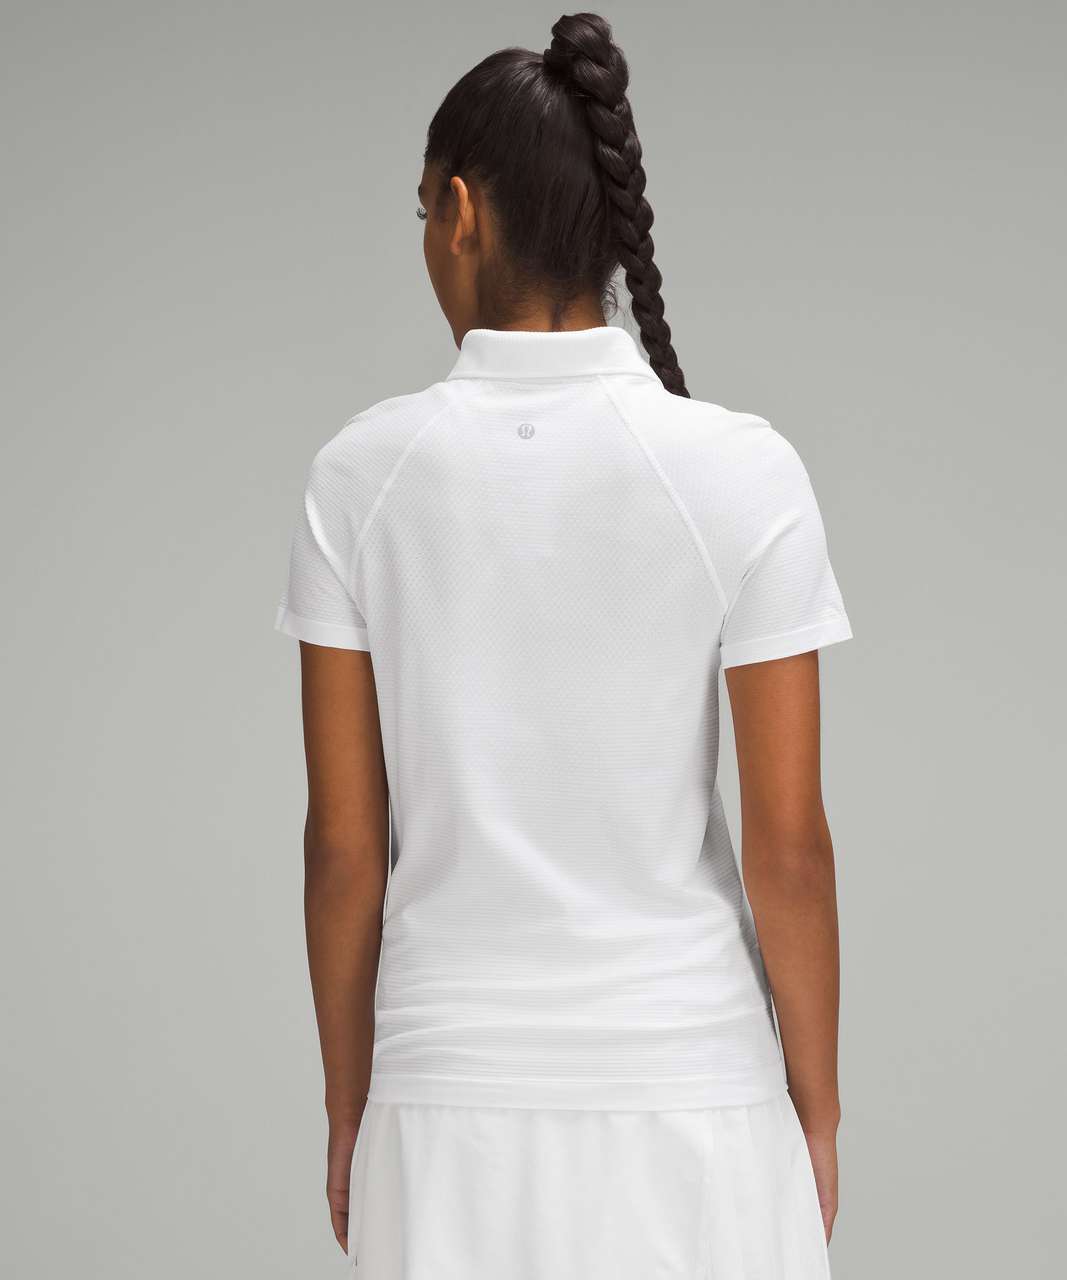 Lululemon Swiftly Tech Short-Sleeve Polo Shirt - White / White